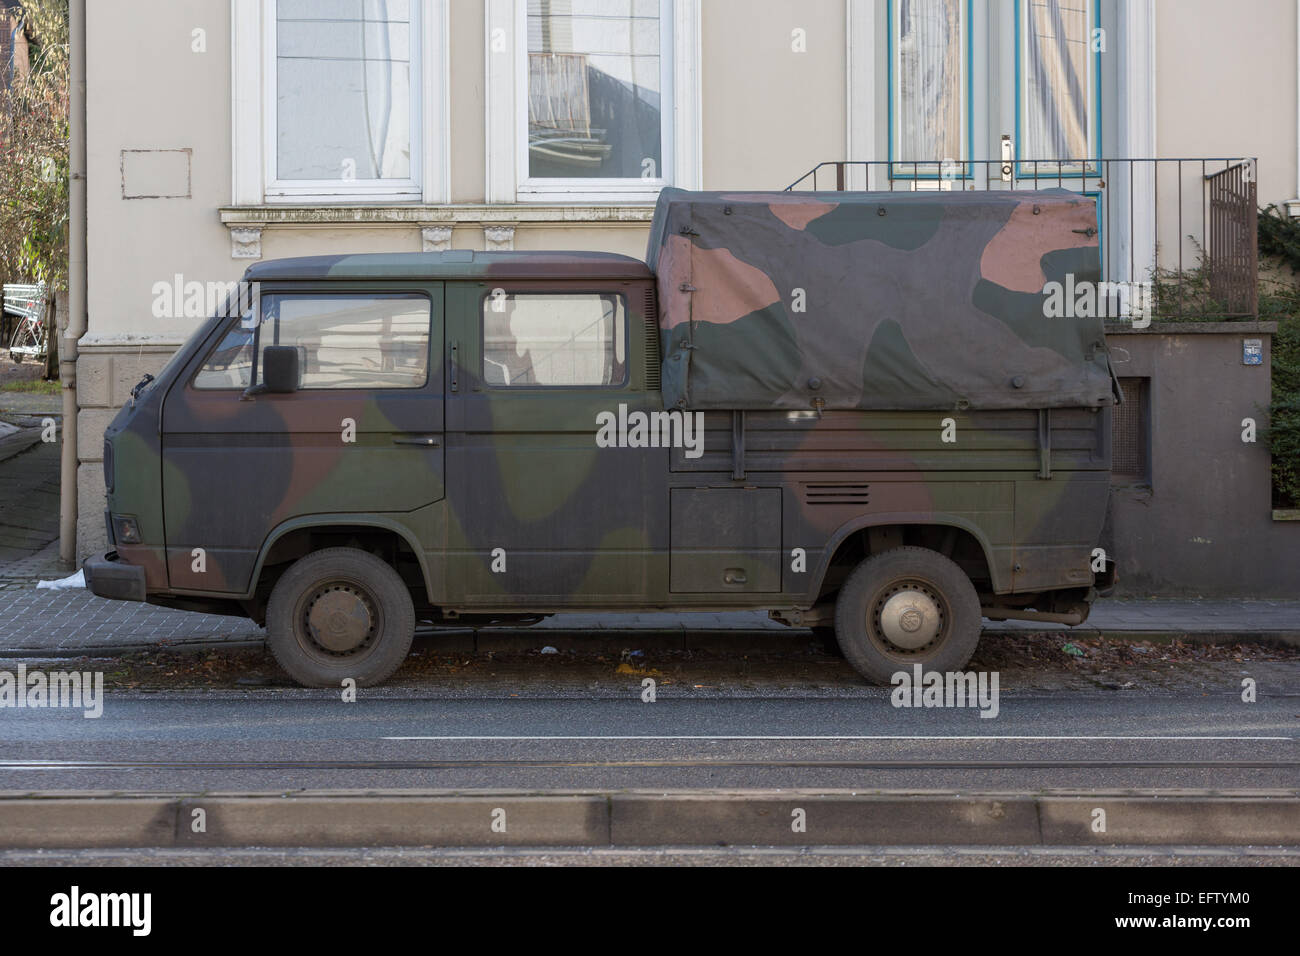 Un ex-militaire allemand, camouflé et véhicule stationné dans une rue Banque D'Images